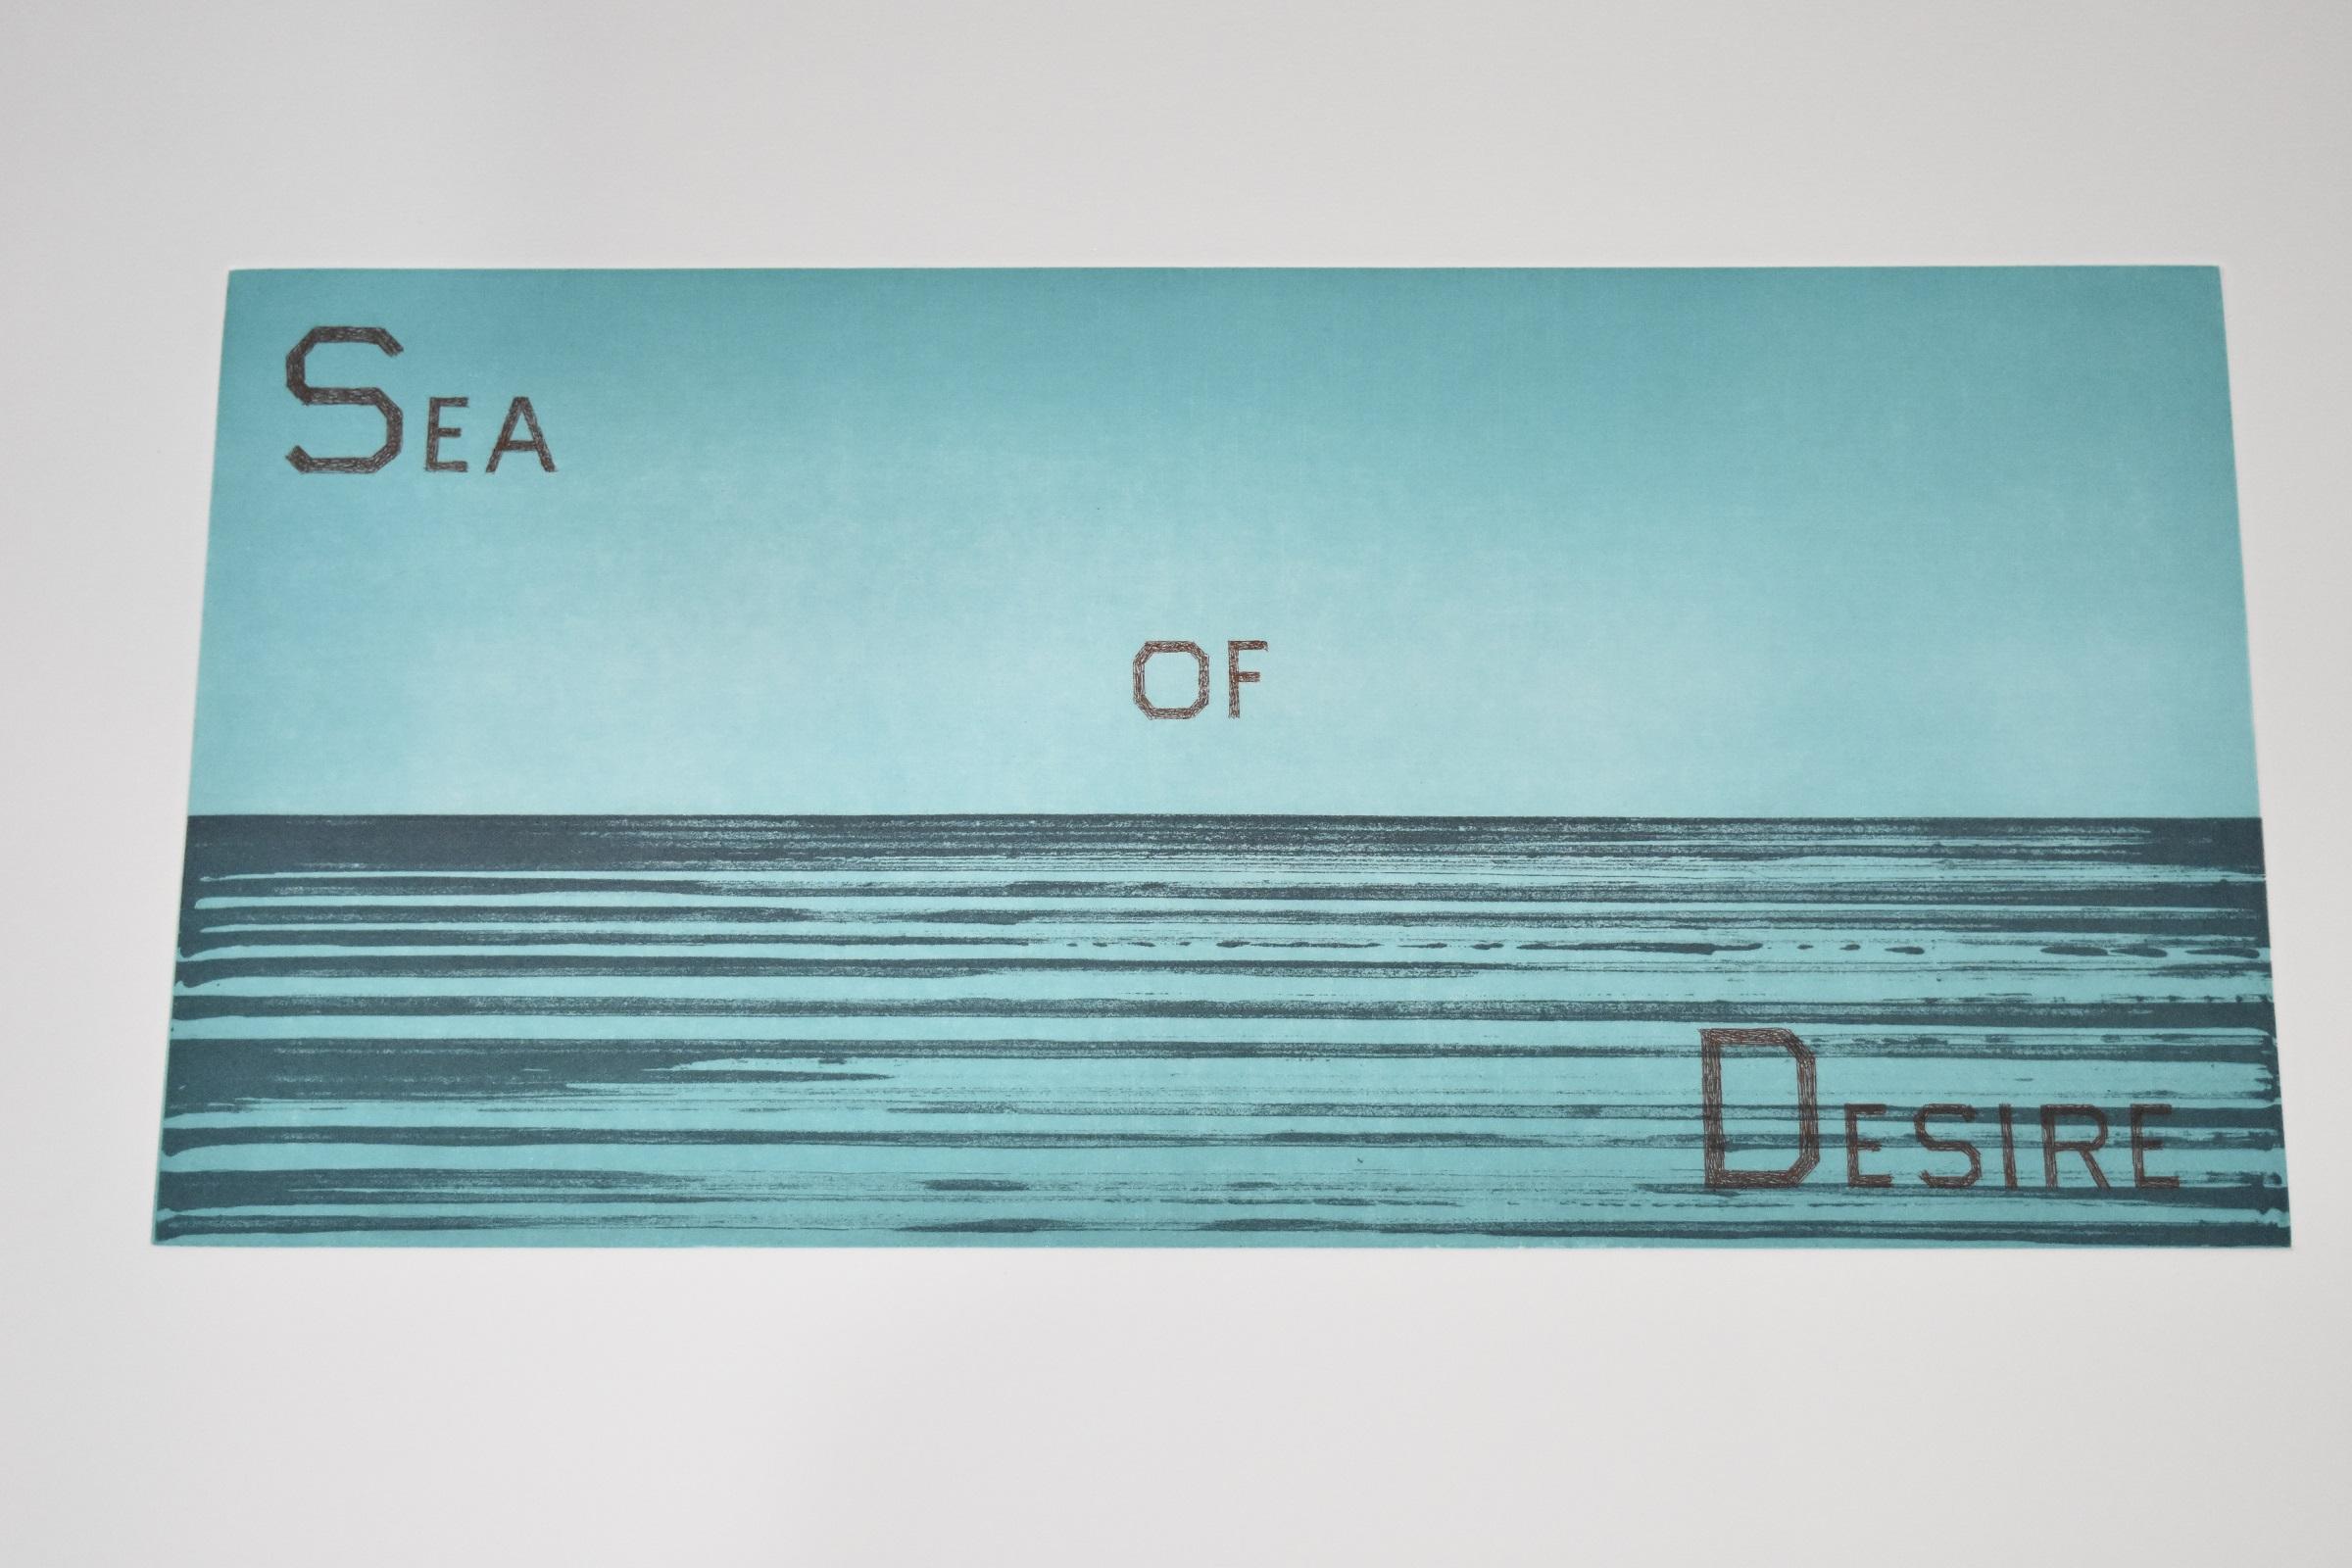 Sea of Desire - Gray Portrait Print by Ed Ruscha